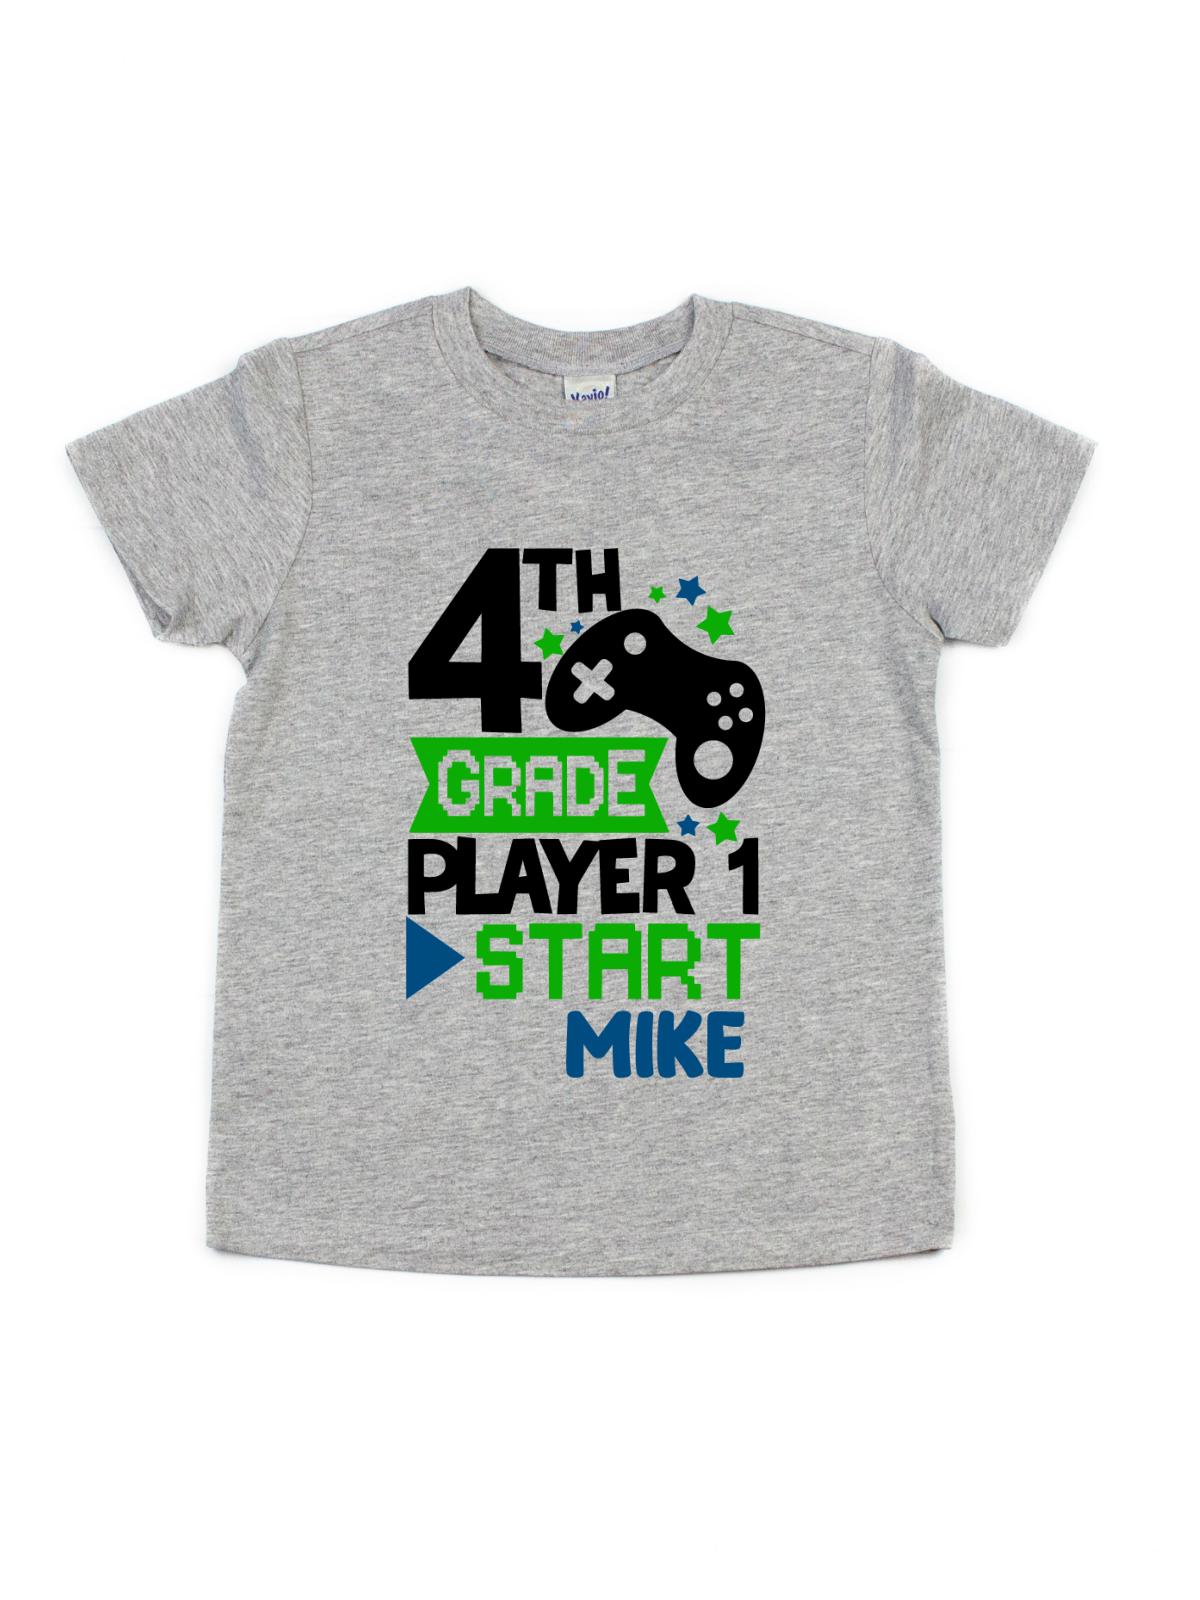 3rd grade player 1 start kids gamer school shirt